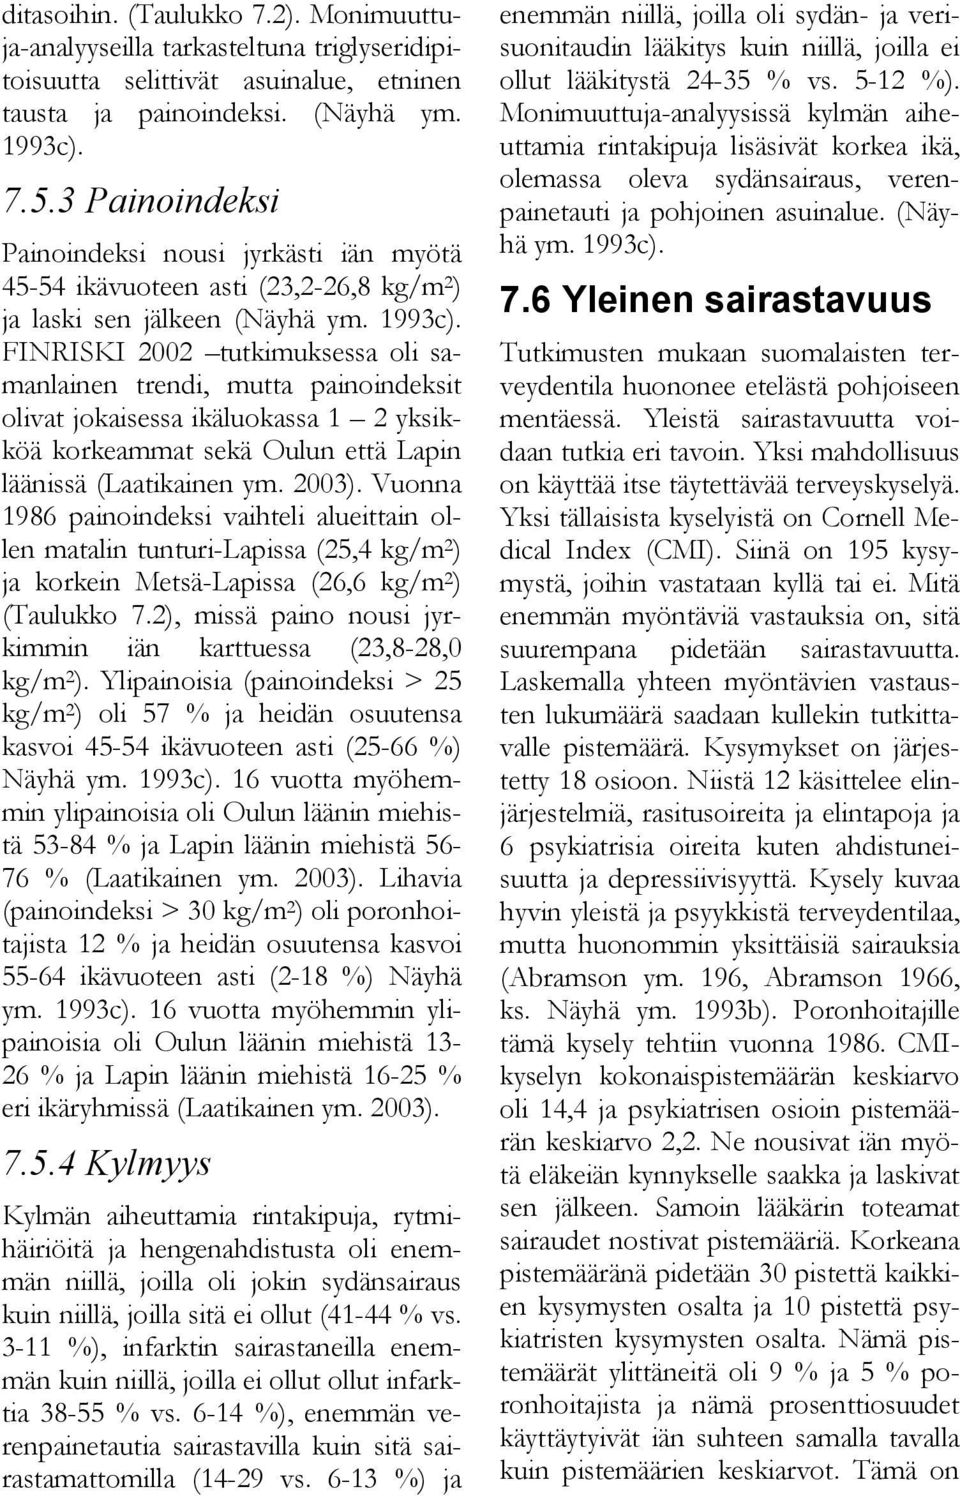 FINRISKI 2002 tutkimuksessa oli samanlainen trendi, mutta painoindeksit olivat jokaisessa ikäluokassa 1 2 yksikköä korkeammat sekä Oulun että Lapin läänissä (Laatikainen ym. 2003).